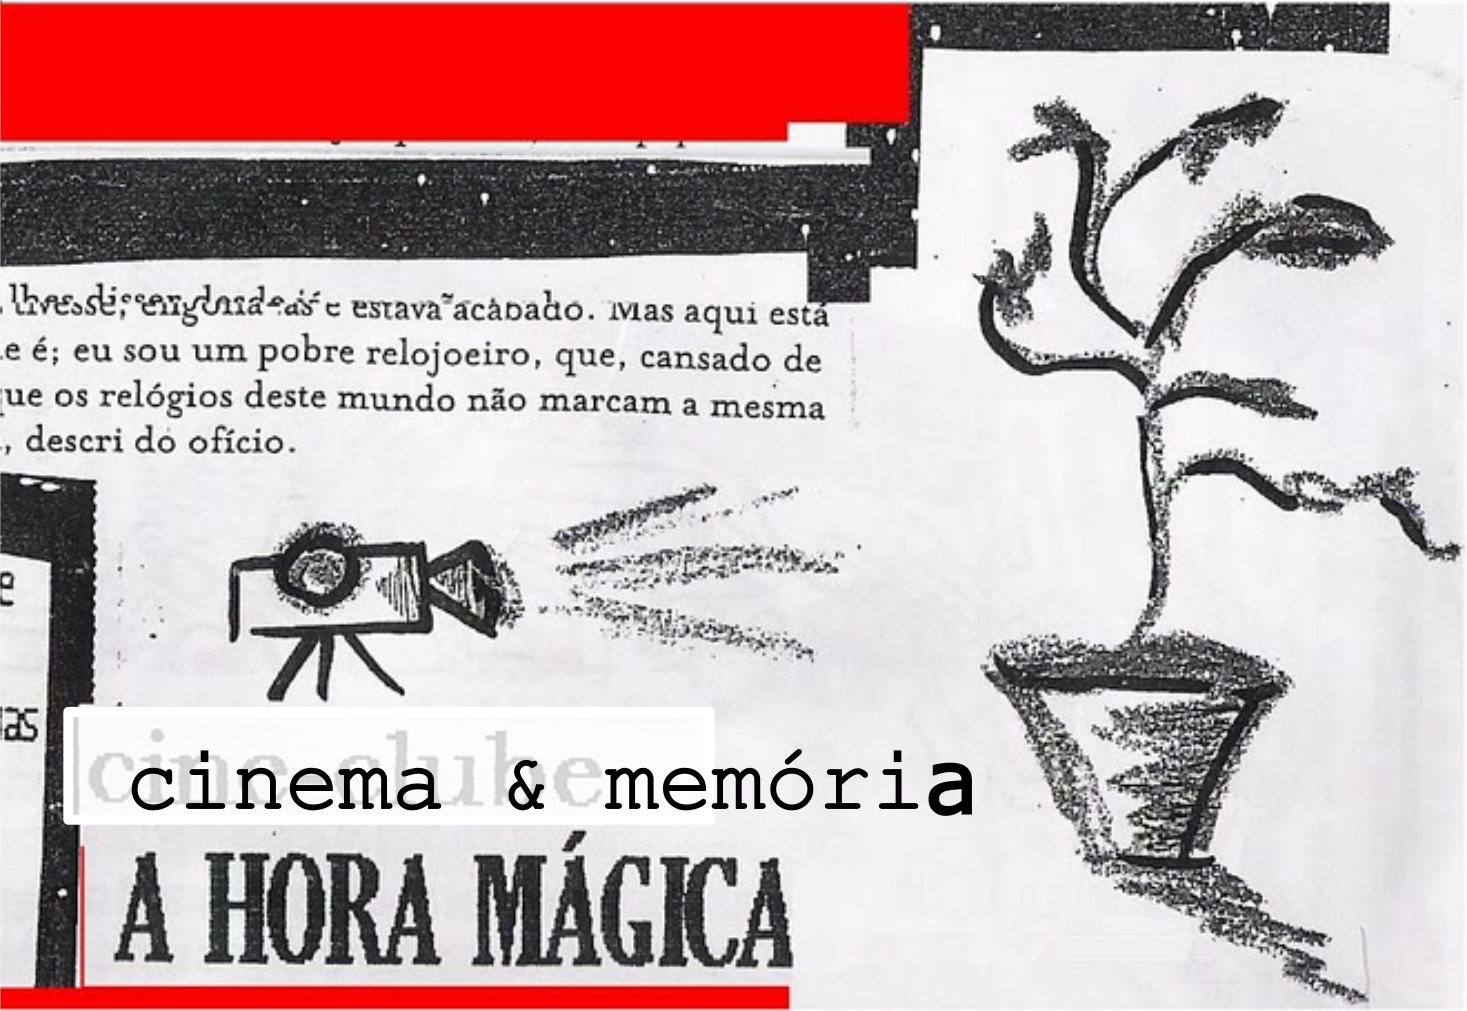 Ahoramágica Cinema & Memória